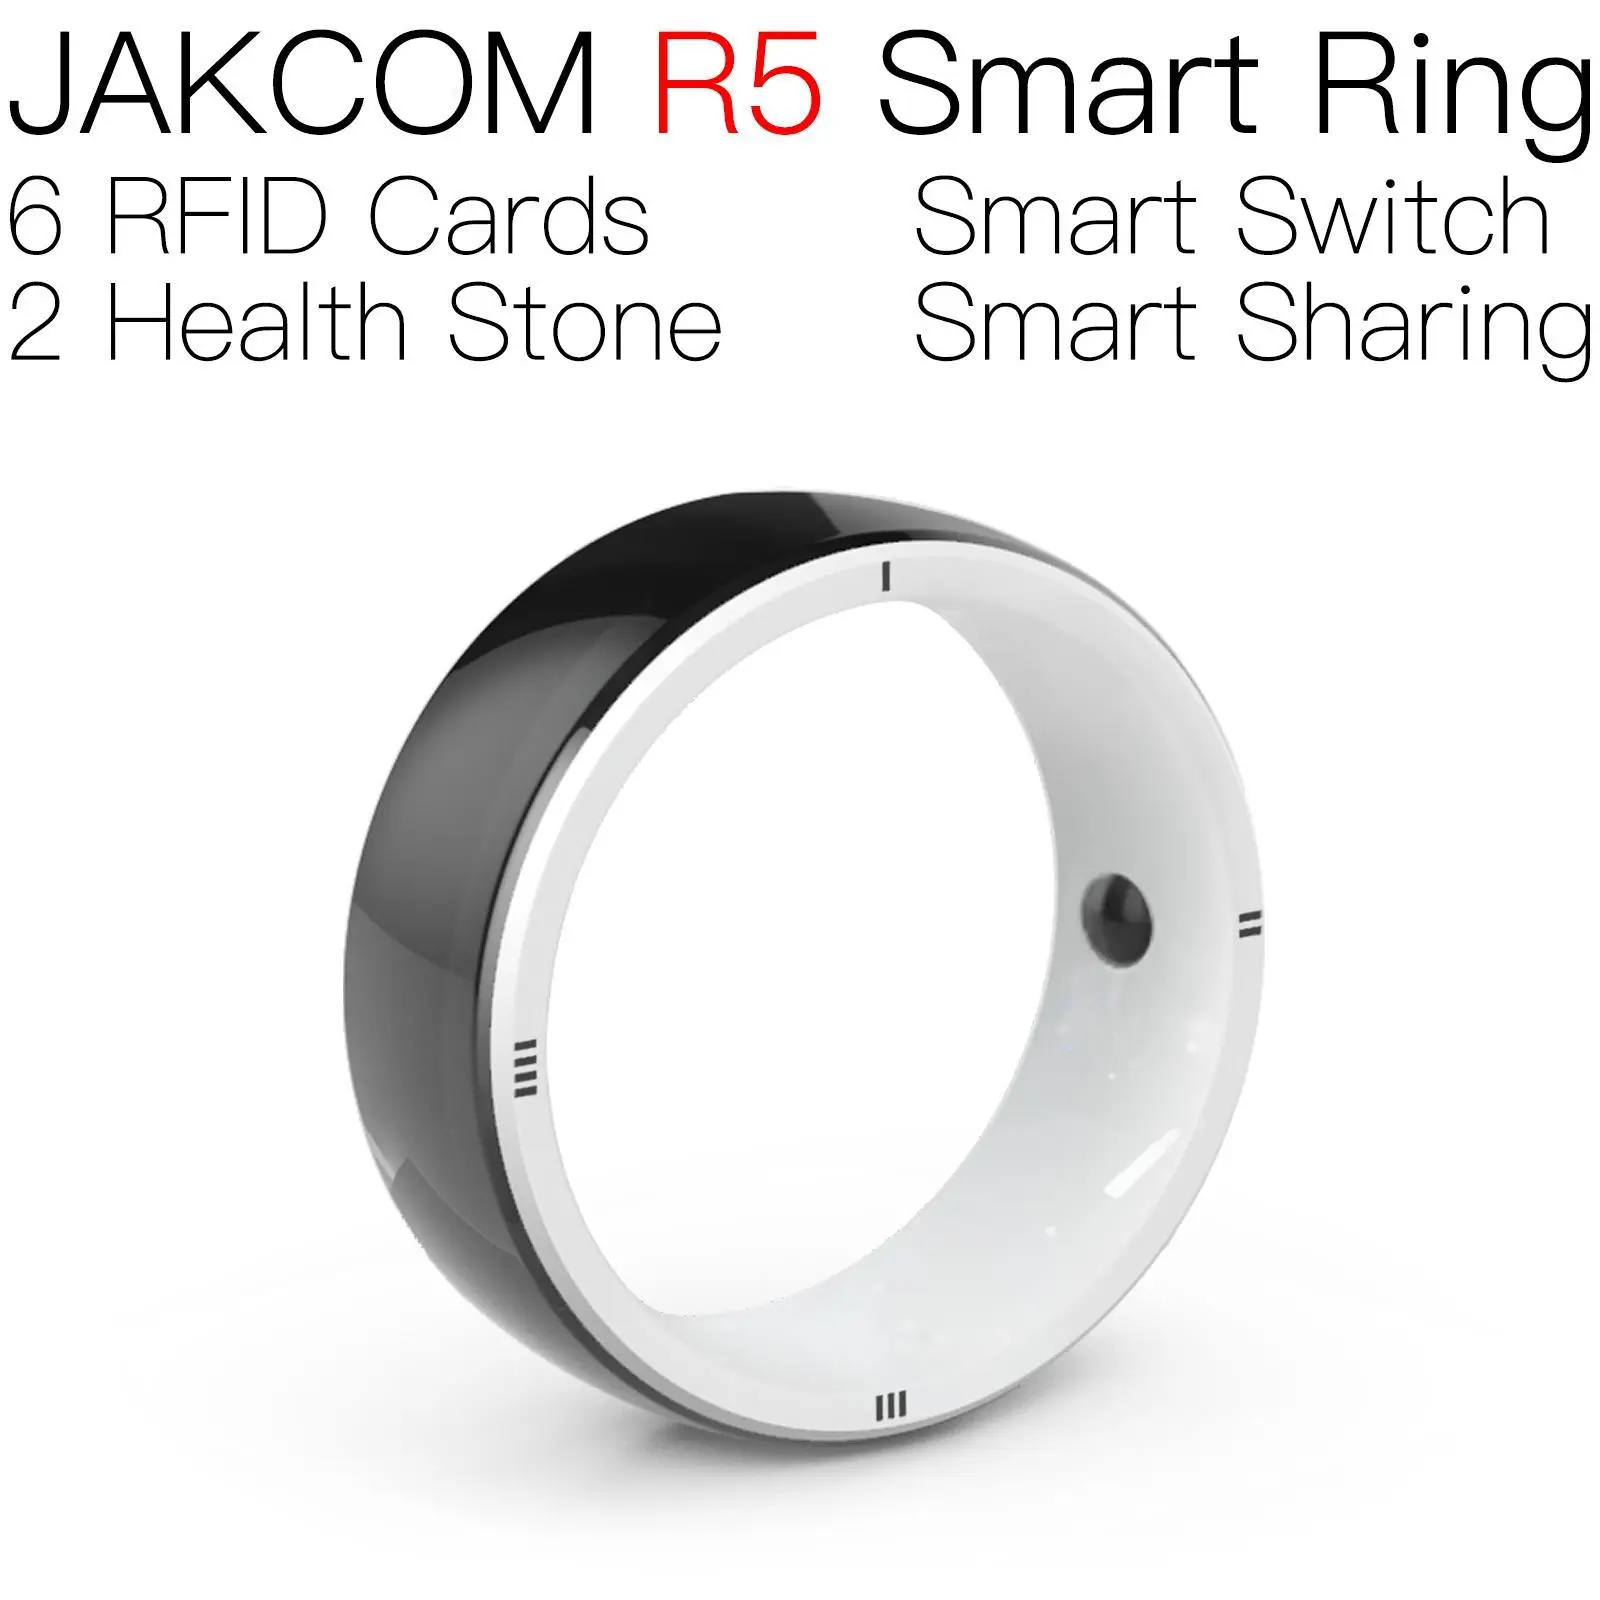 JAKCOM R5 Smart Ring Соответствует джойстику USB-fighting nfc-держателю чипа анимационного программного обеспечения slix 15693 car reader long